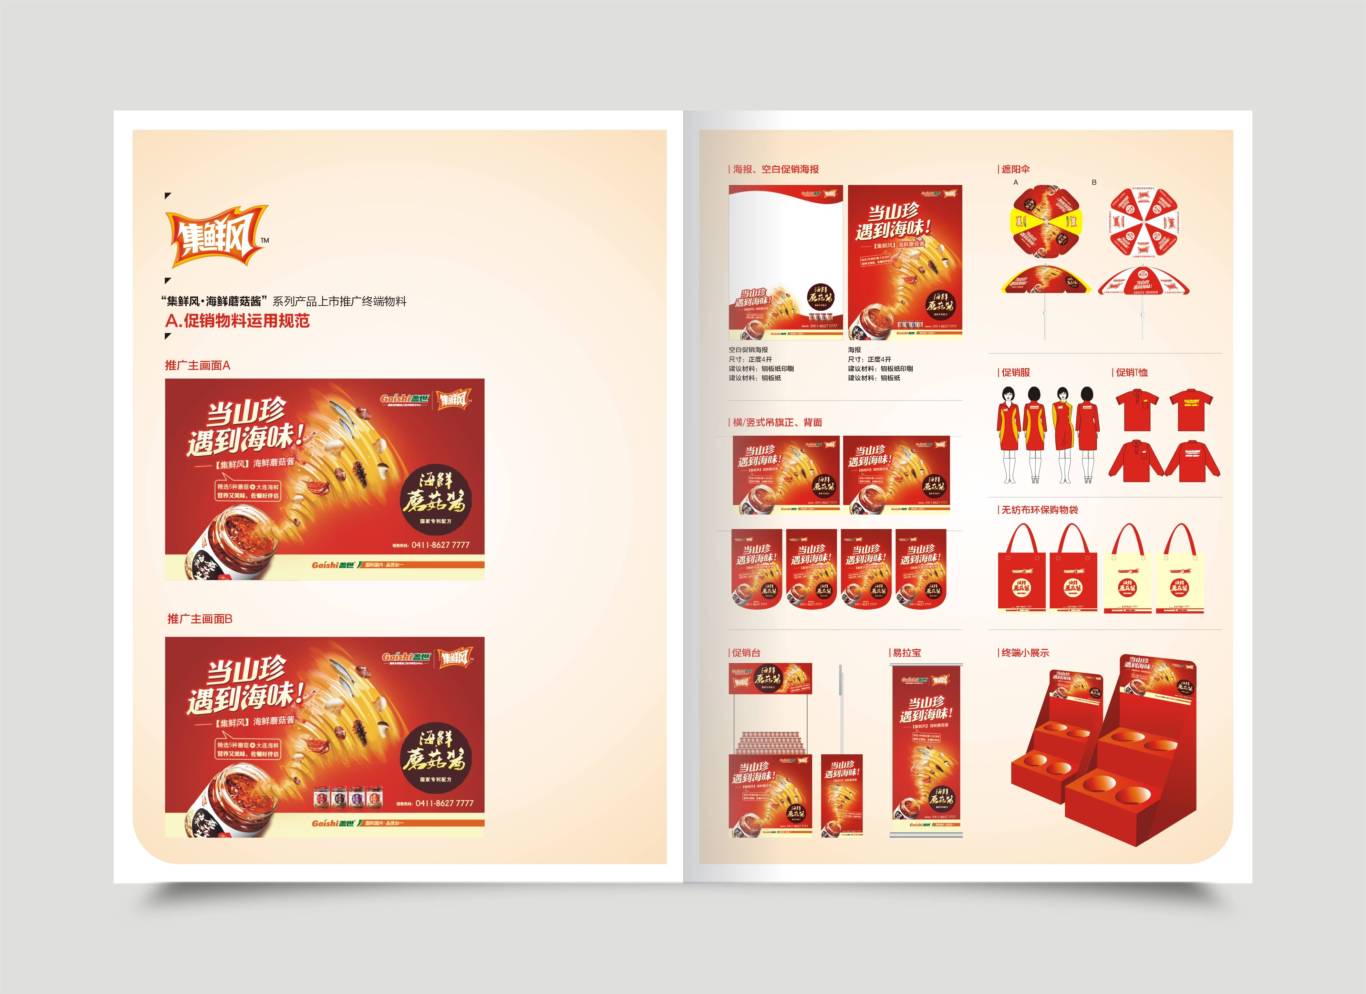 集鲜风海鲜蘑菇酱品牌形象设计+包装设计+推广物料设计图6